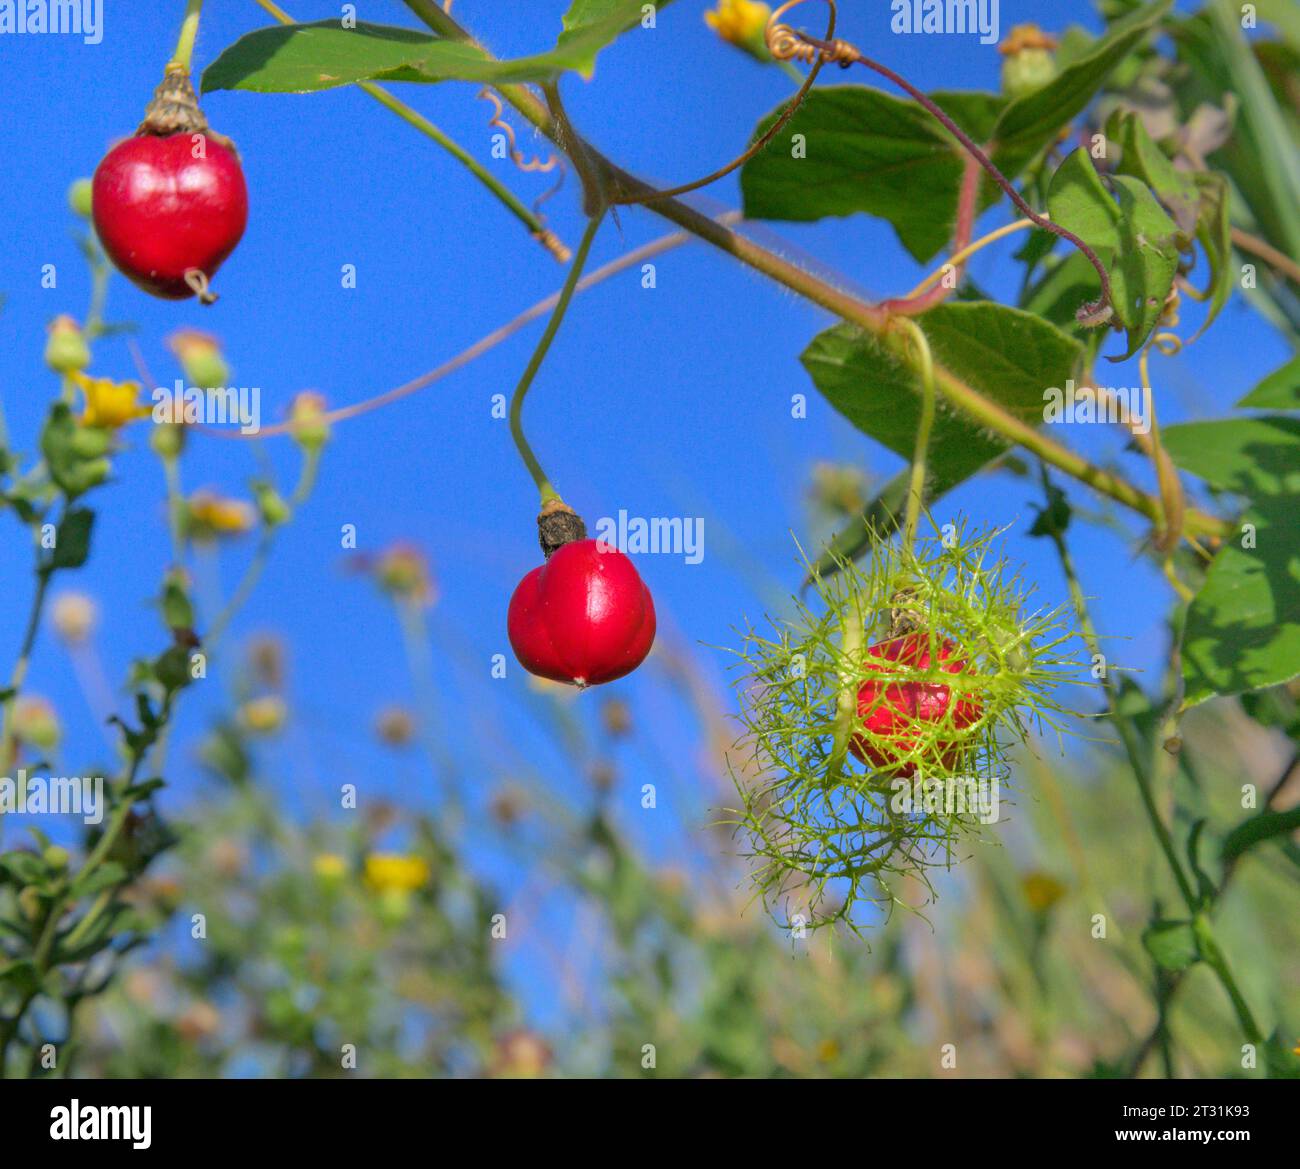 Fruit de la passion puant ou maracuja sauvage (Passiflora foetida), fruits mûrs et mûrs sur vigne dans les zones humides côtières, Galveston, Texas, USA. Banque D'Images